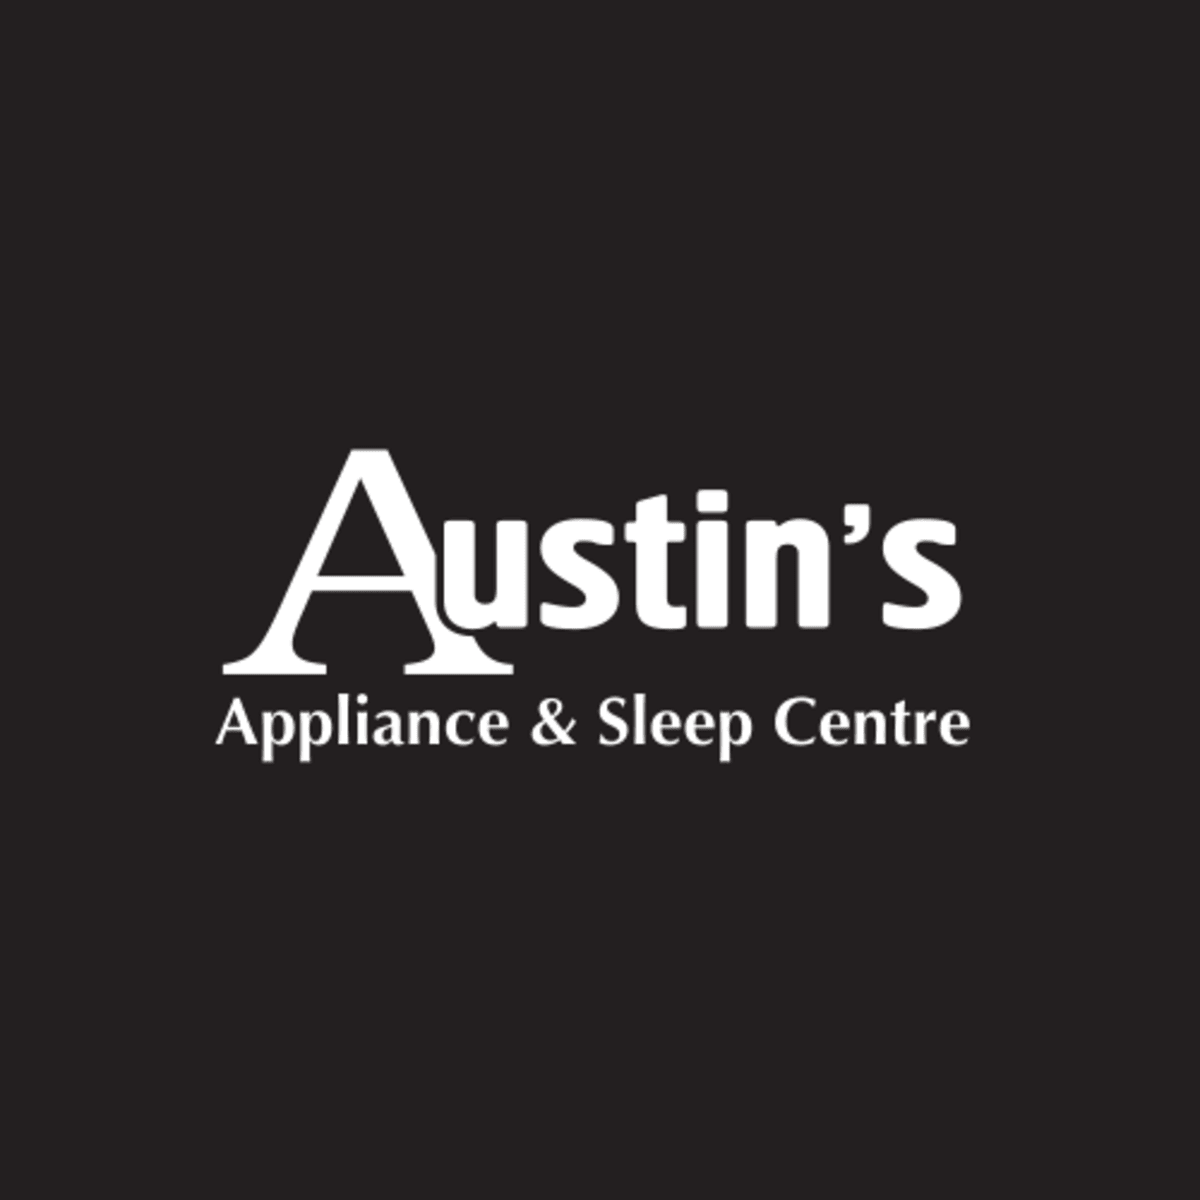 Austins-Appliance